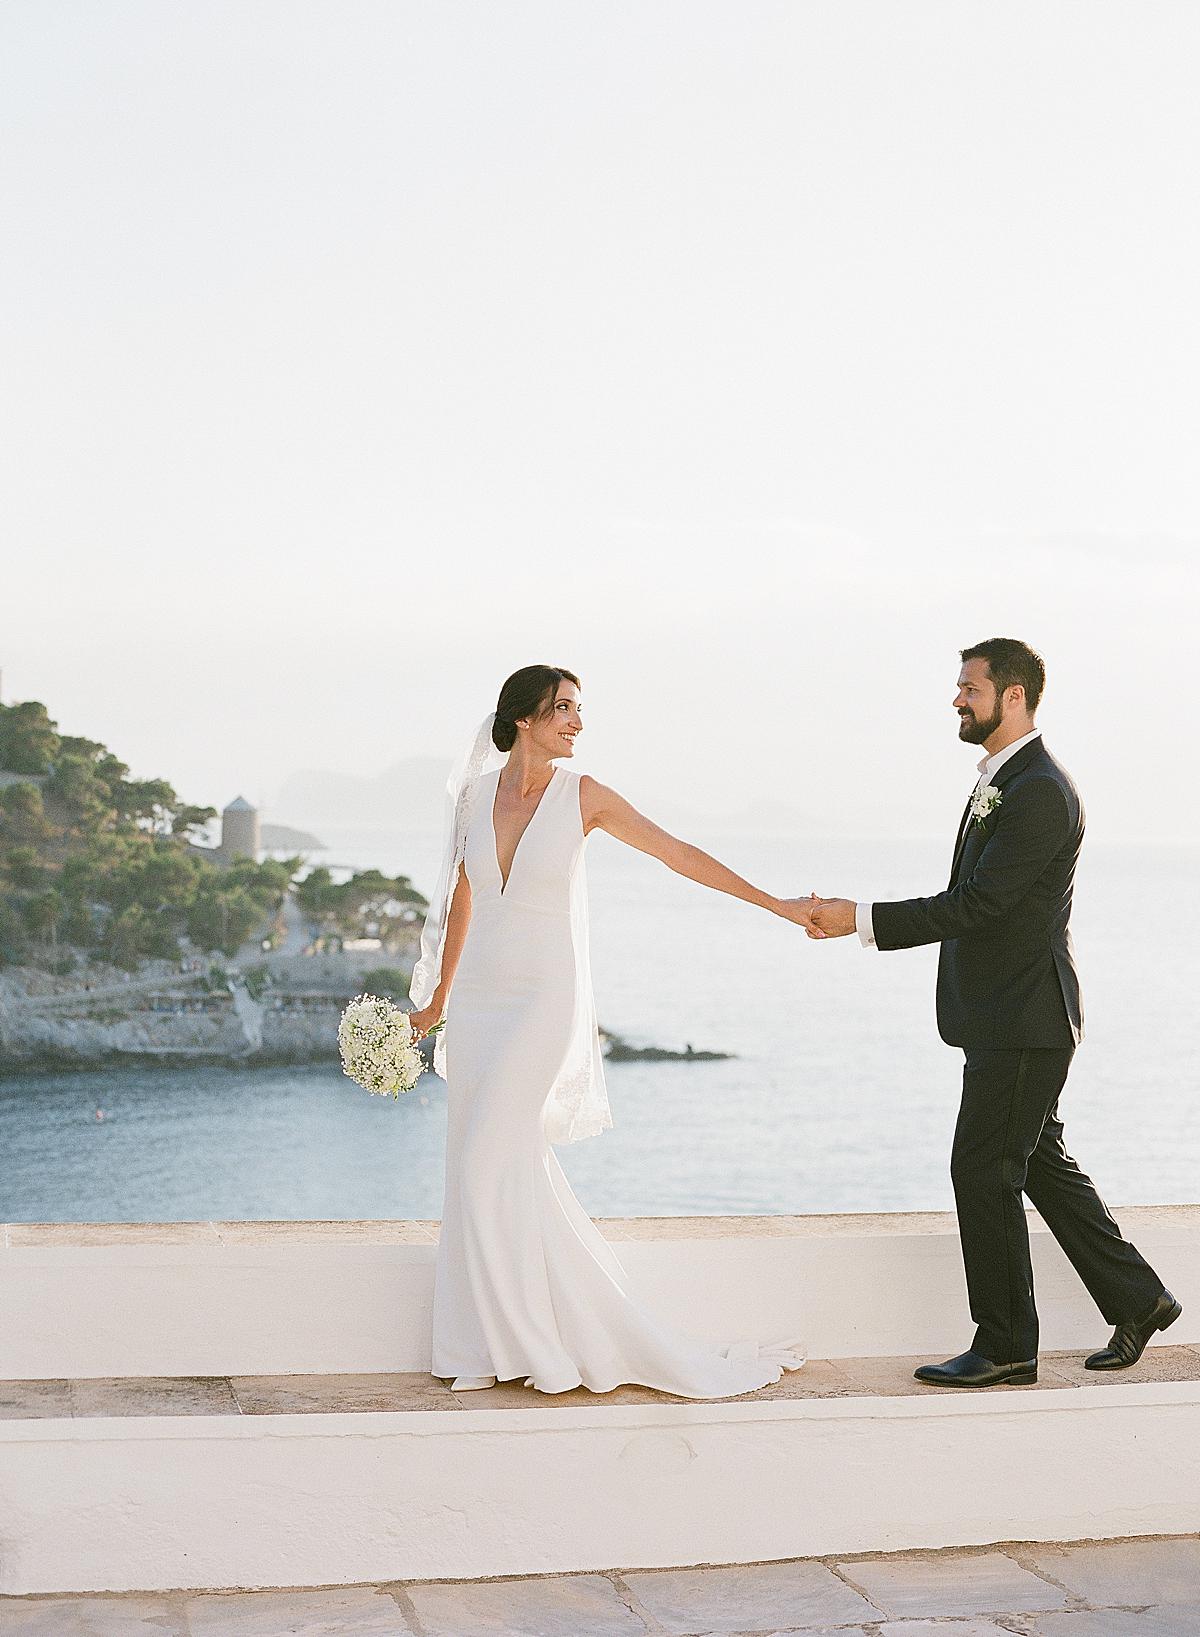 bride and groom portrait overlooking hydra harbour